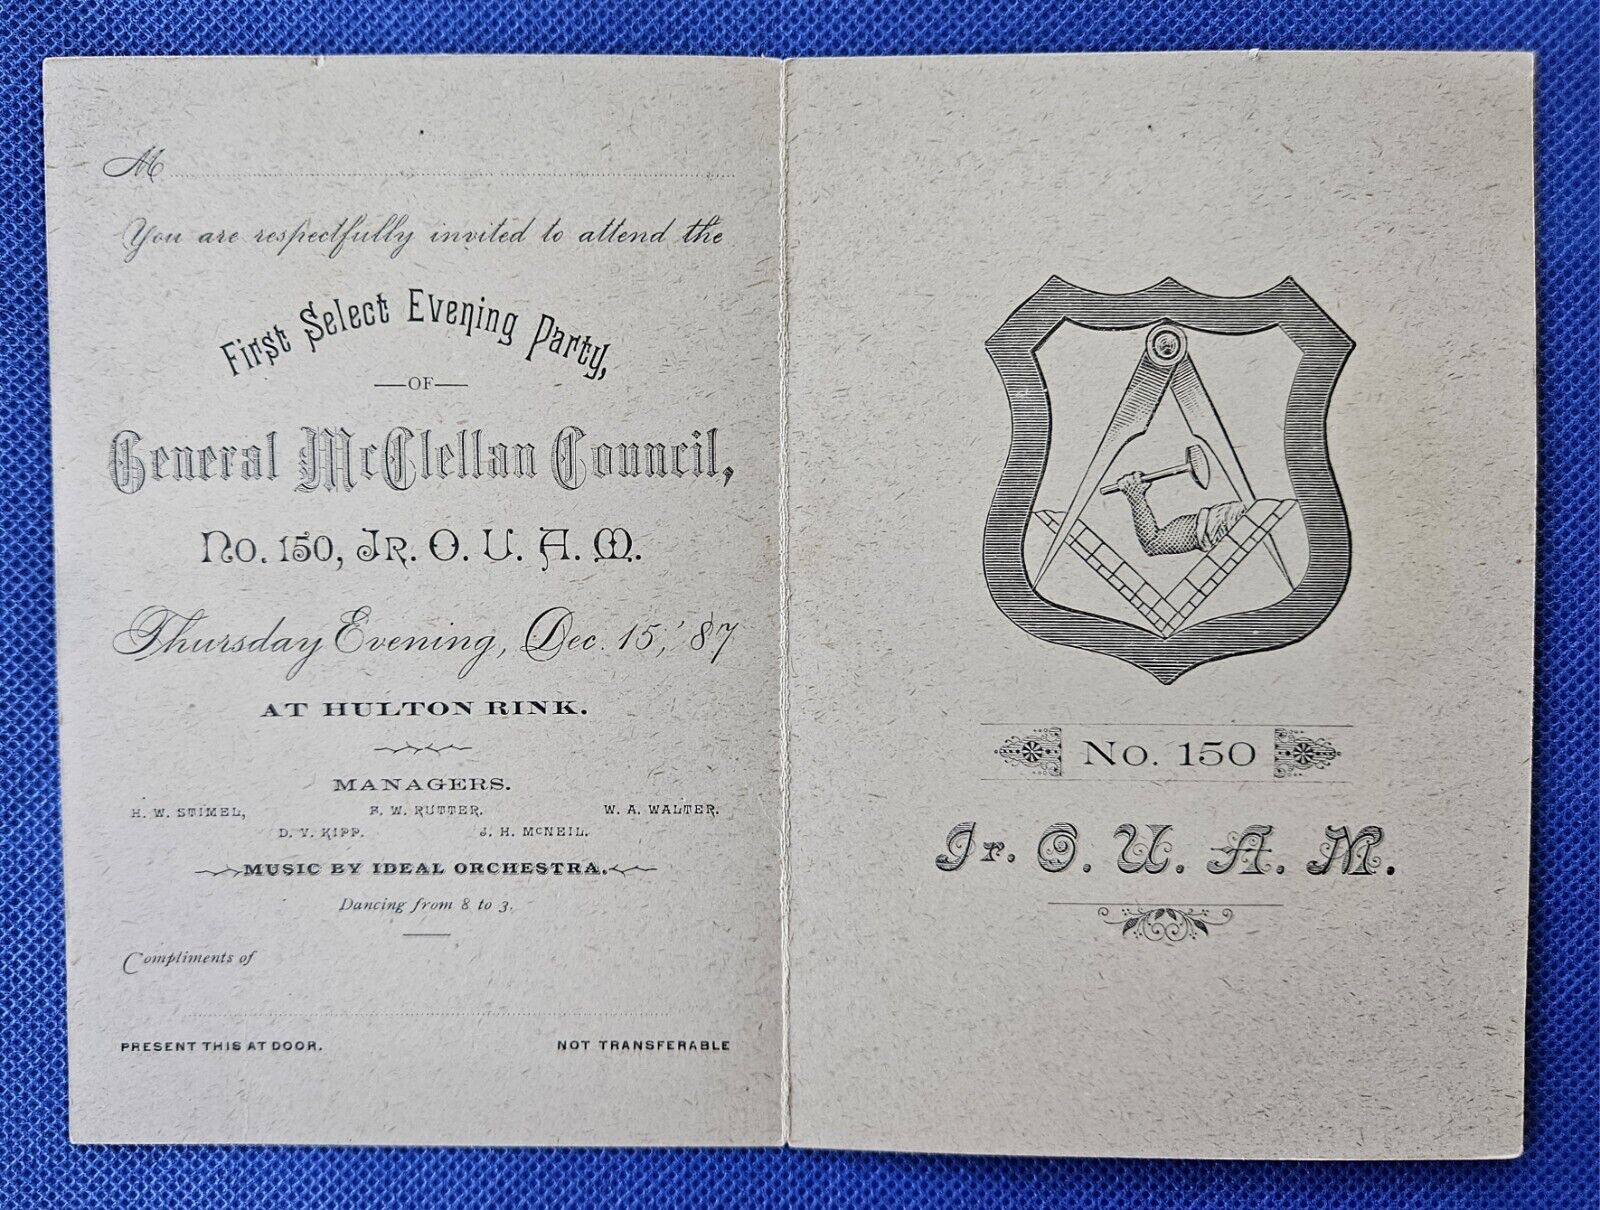 1887 No. 150 Jr. O.U.A.M. General Mcclellan Council Evening Party Invitation NM